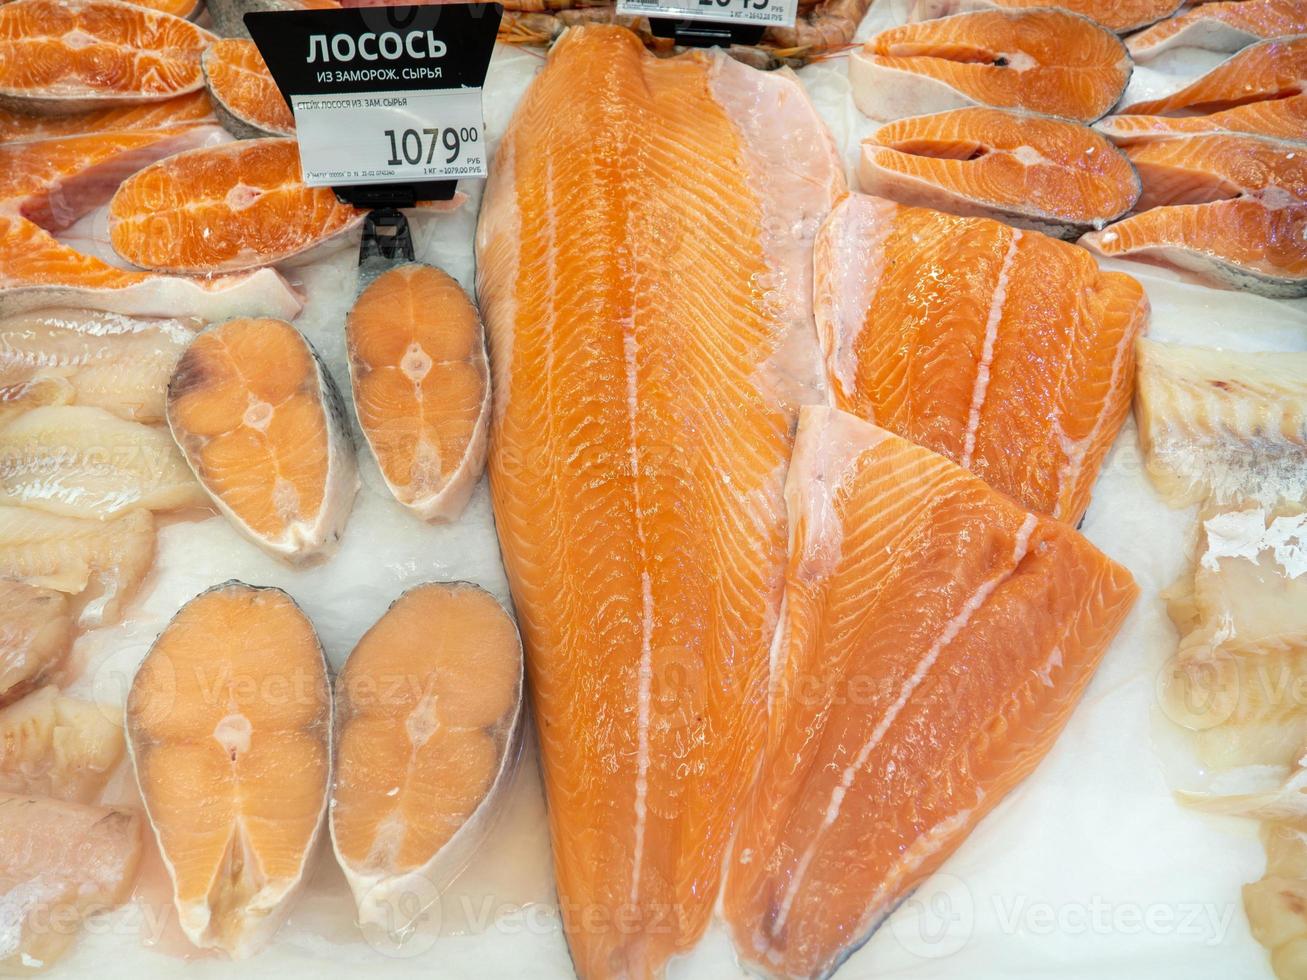 loja de peixes. venda de salmão. cabeças de peixe. filé de salmão refrigerado no balcão. peixe no gelo. produtos de carne foto